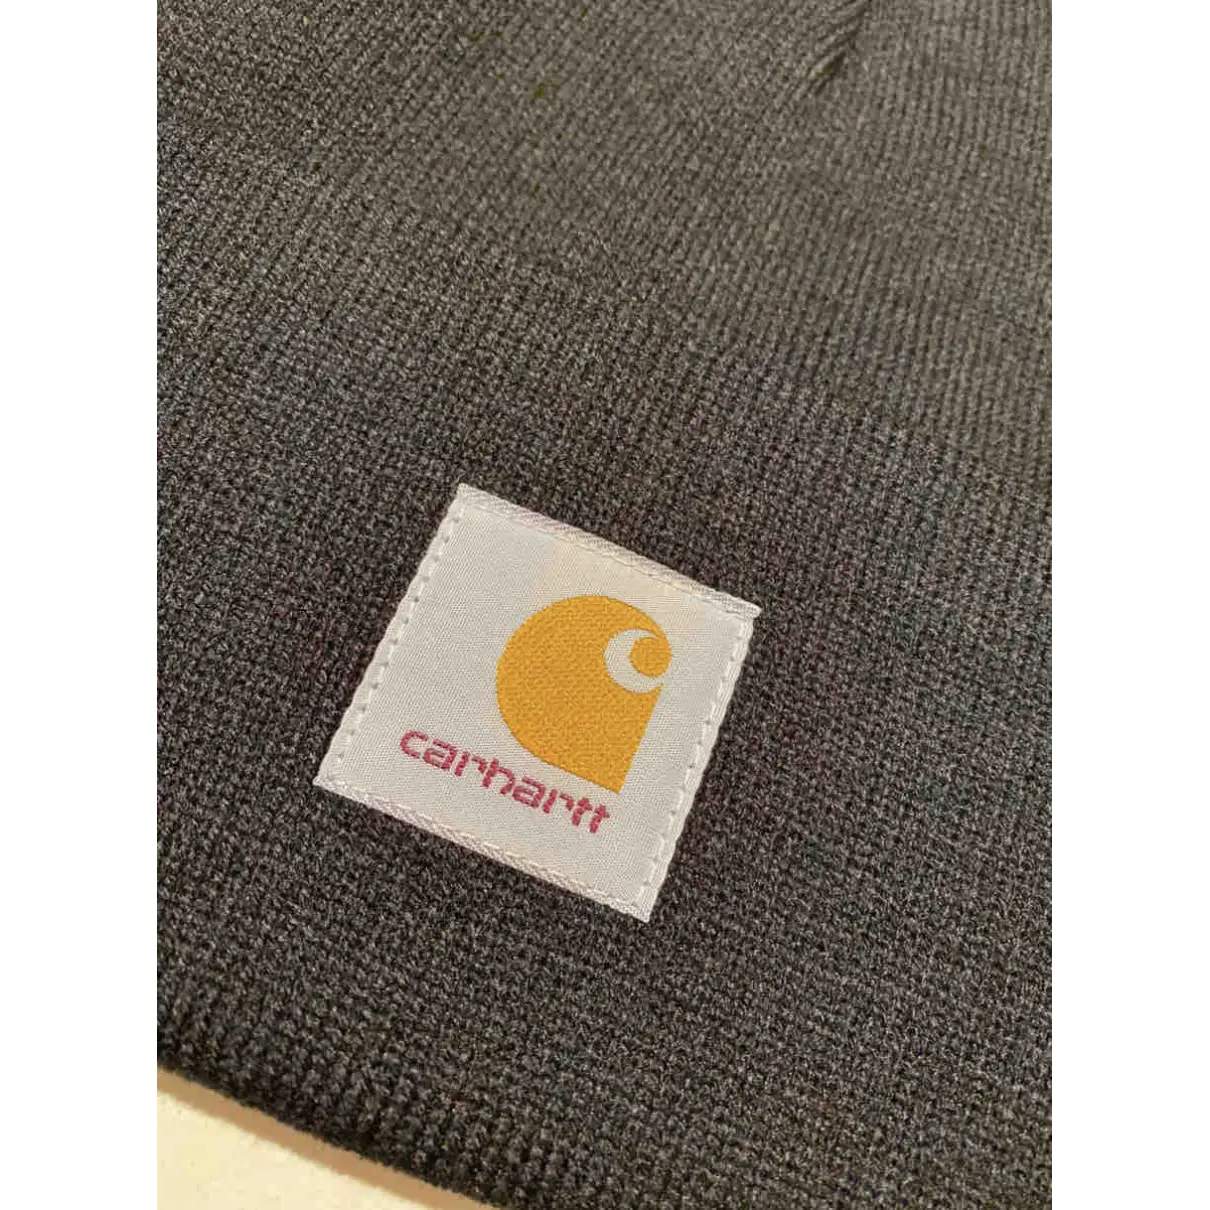 Buy Carhartt Hat online